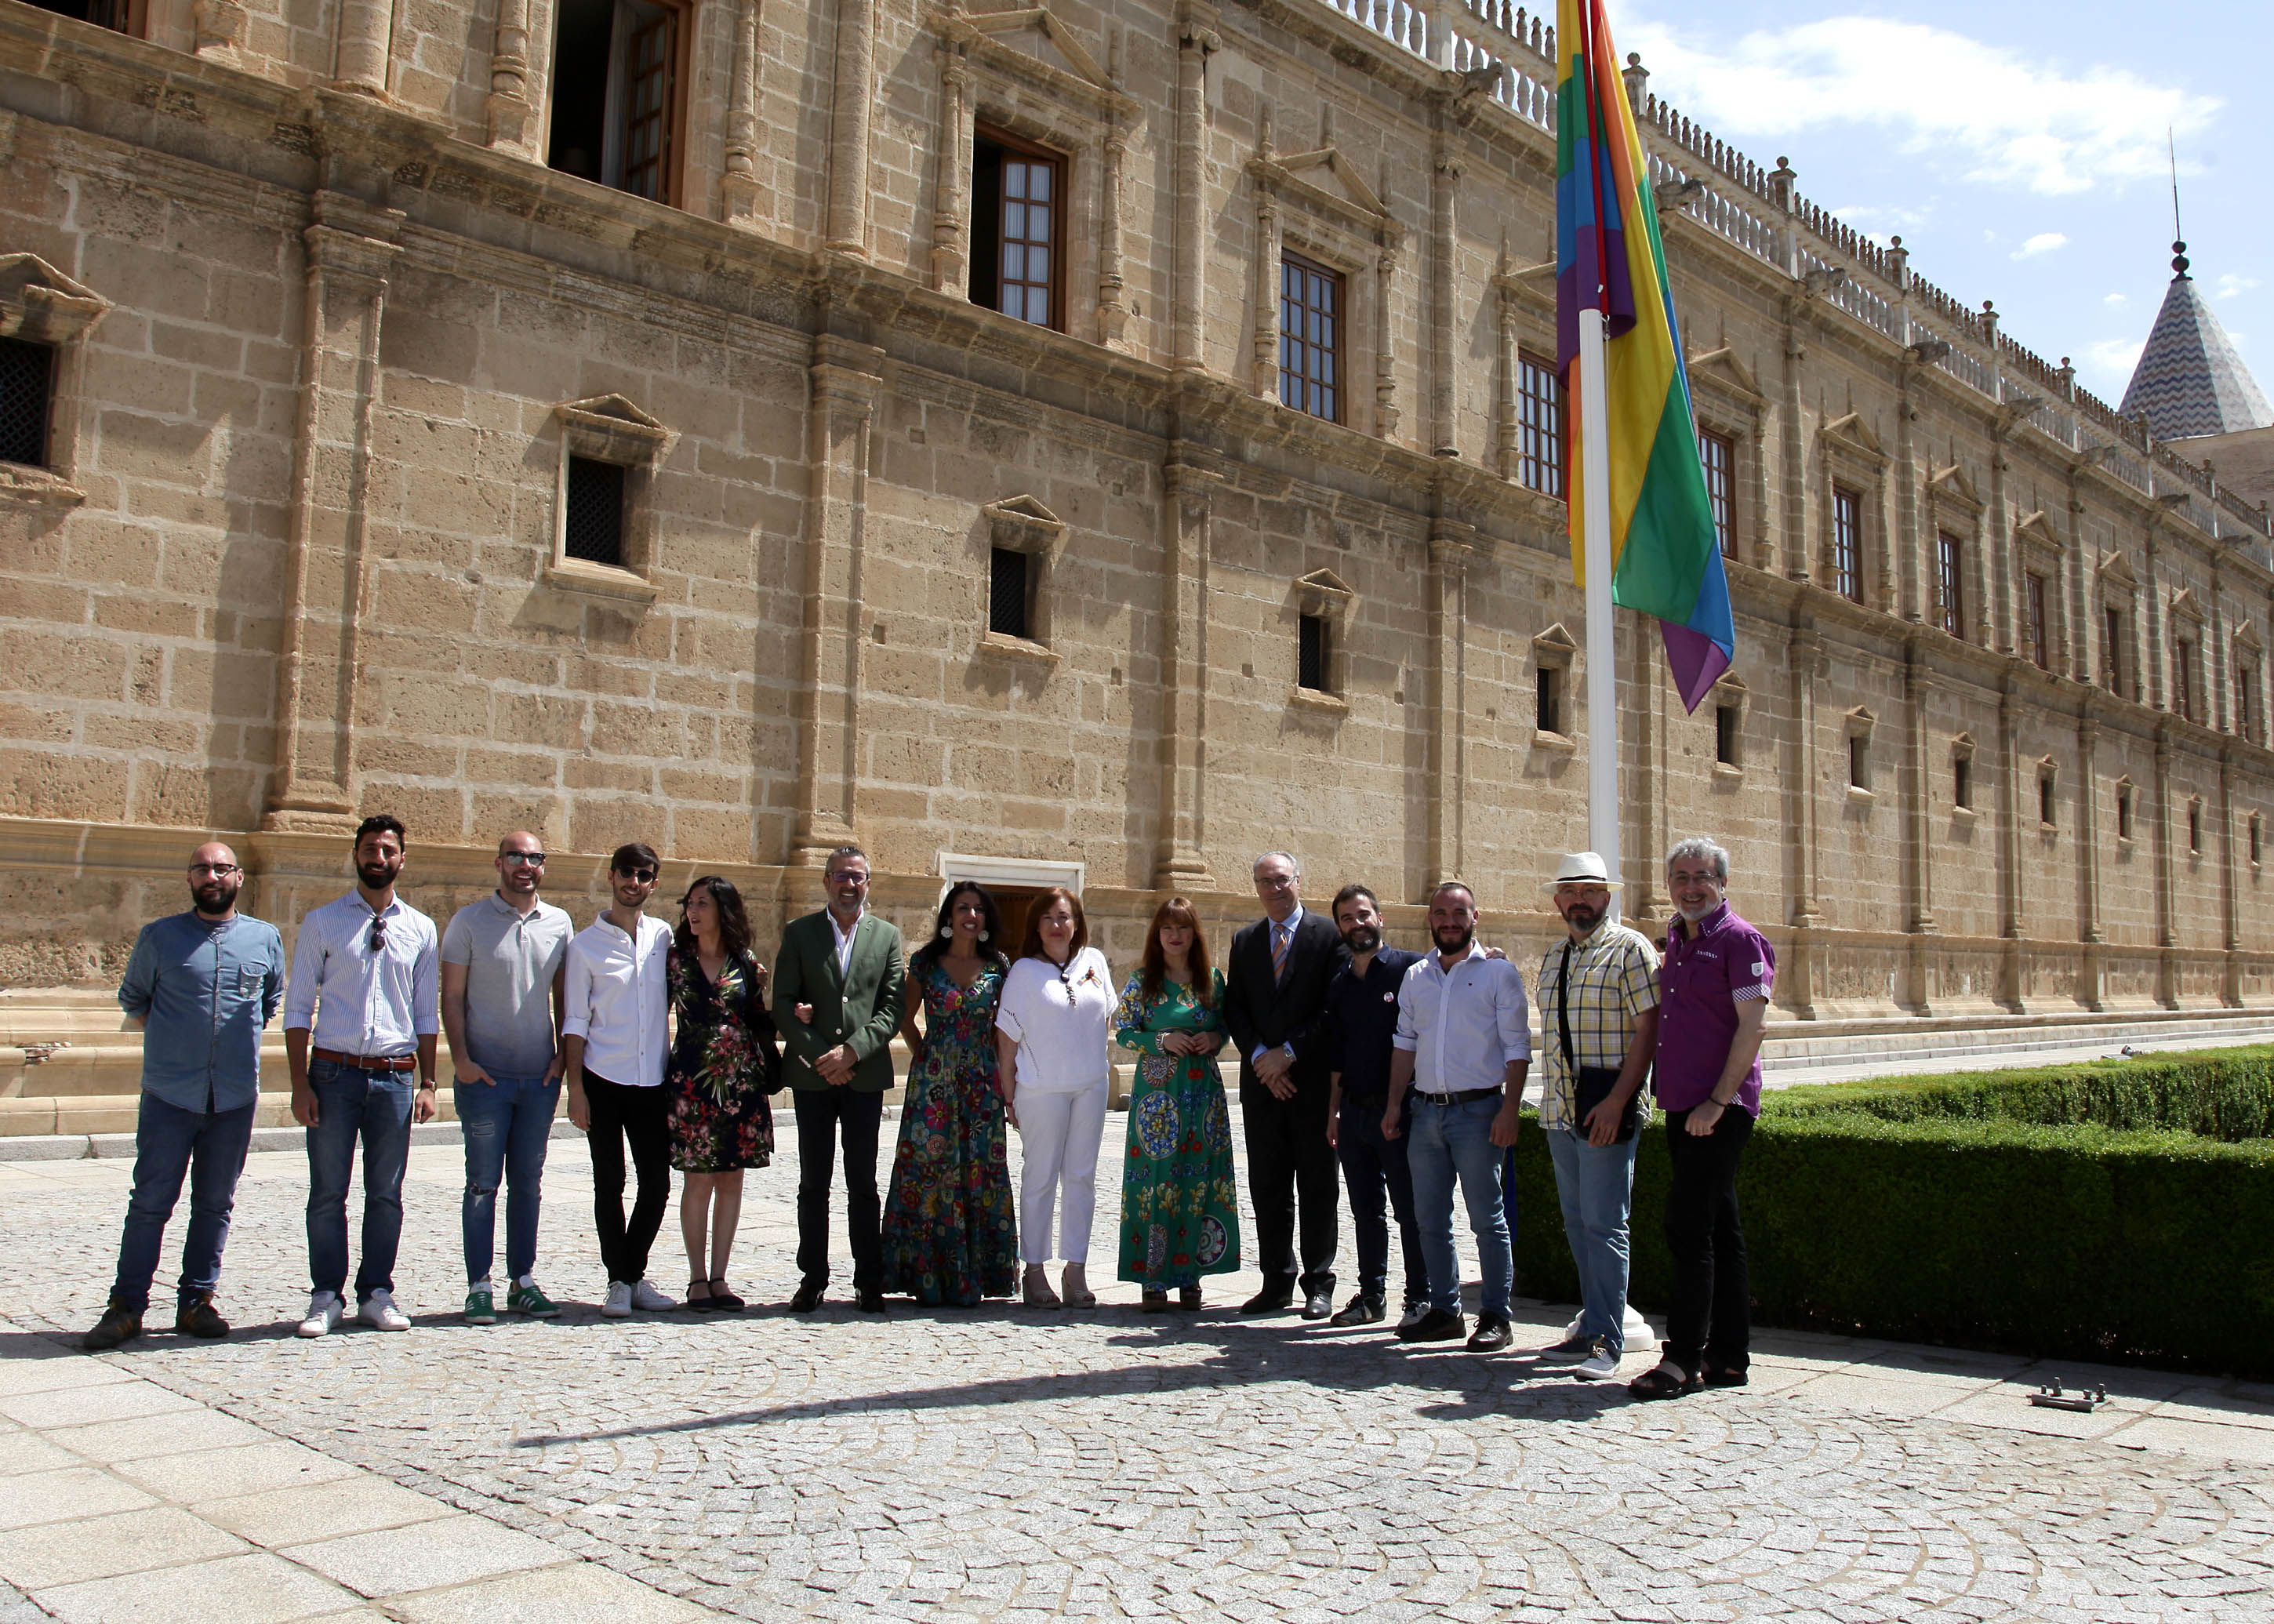  La Bandera de la Diversidad ondea ante la fachada del Parlamento con motivo del Da Internacional por los Derechos de Lesbianas, Gays, Transexuales y Bisexuales 